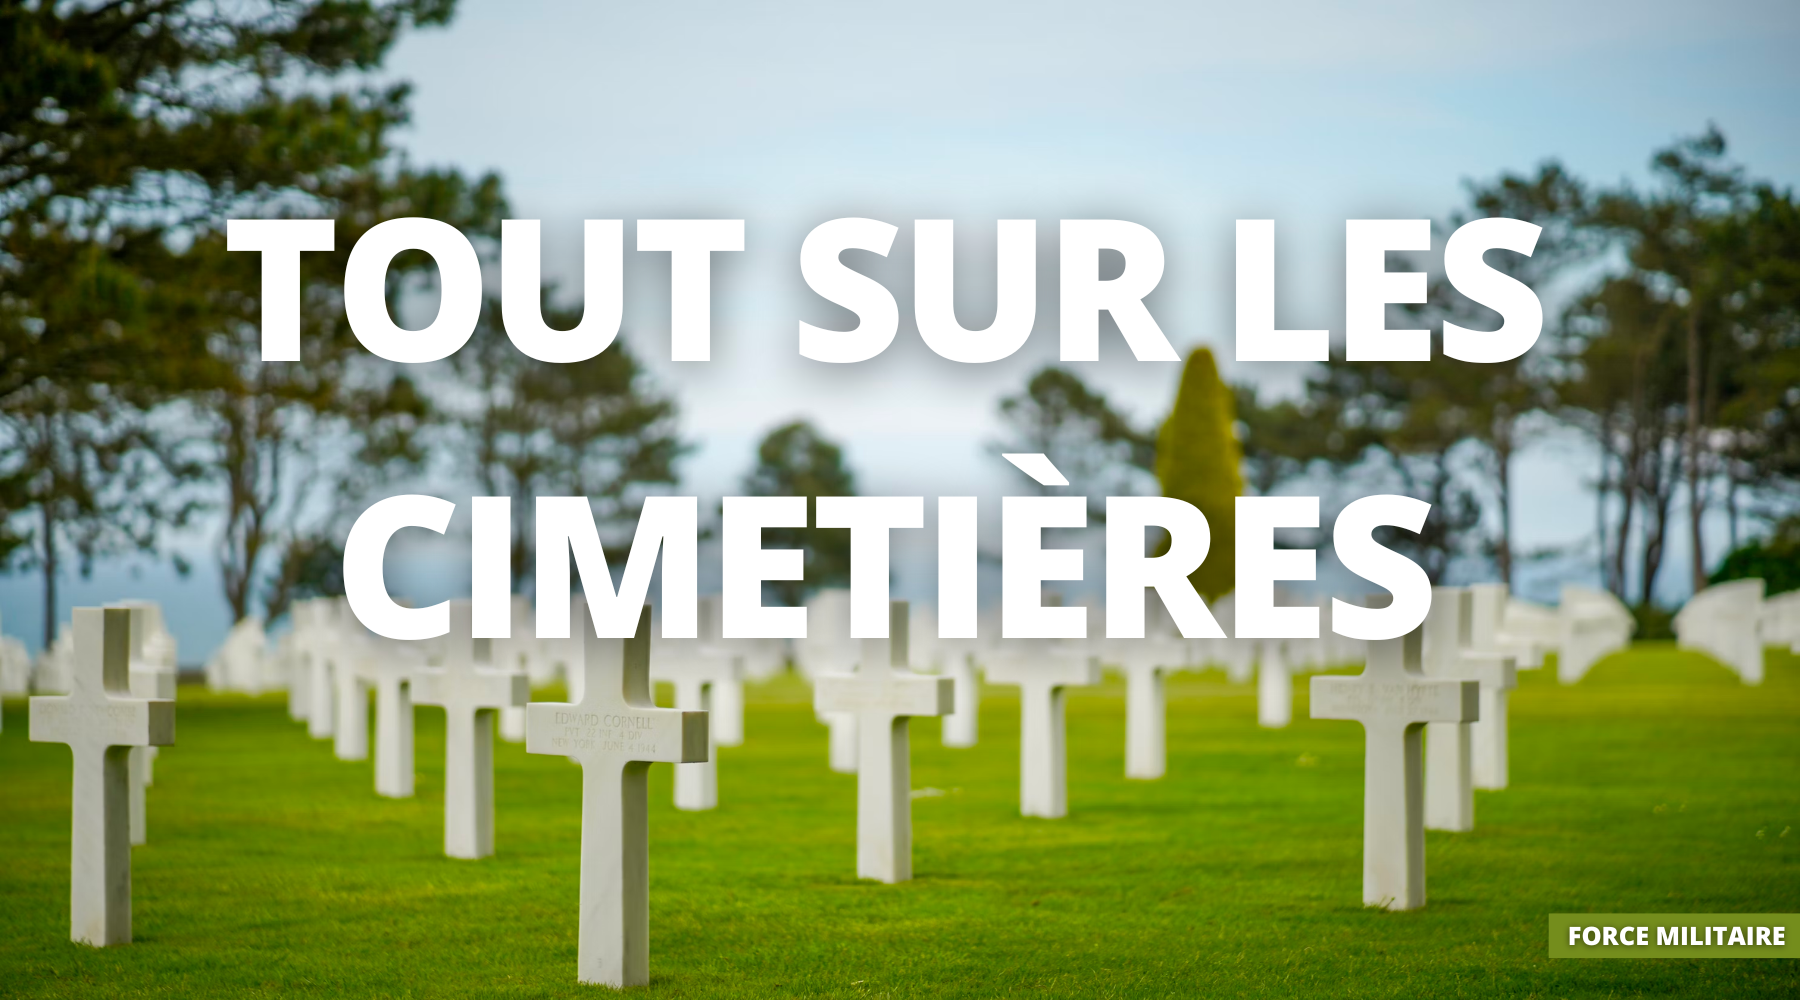 Les cimetières militaires : témoins silencieux de l'histoire